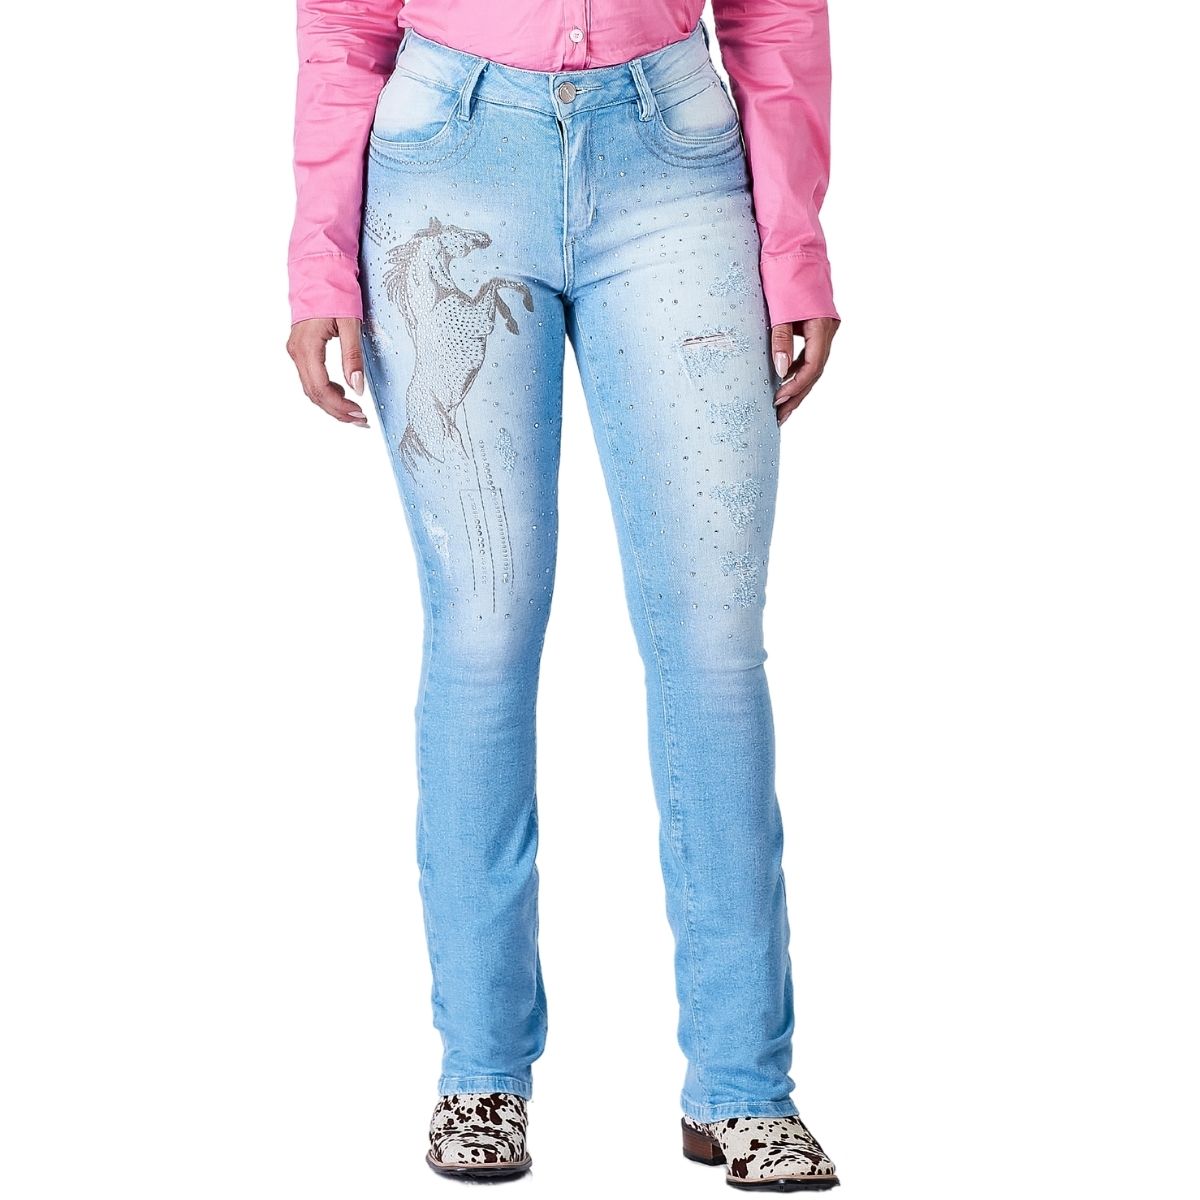 Calça Jeans Feminina Minuty Bordado e Brilho - Ref. 231214